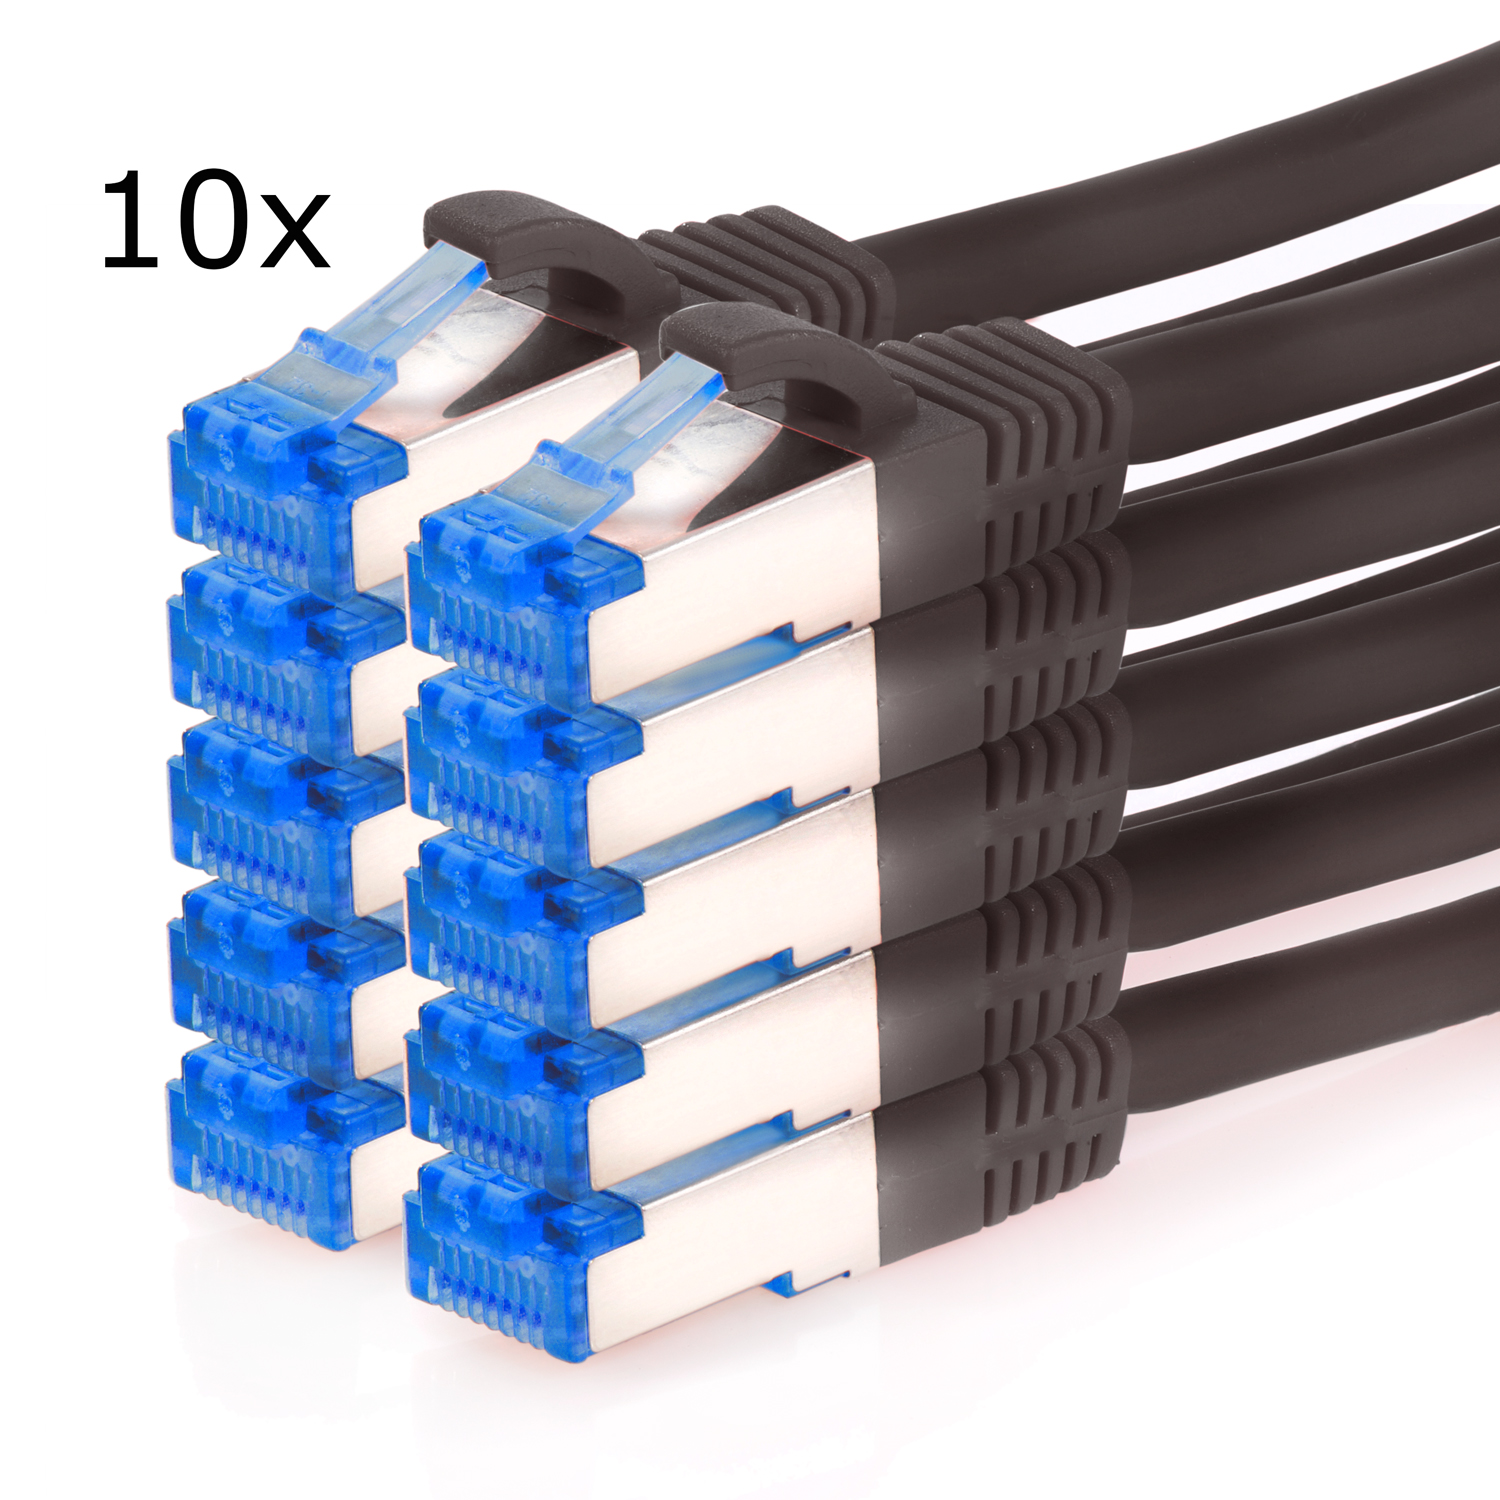 TPFNET 1,5 S/FTP Pack 10GBit, 1,5m schwarz, Patchkabel m Netzwerkkabel, 10er Netzwerkkabel /